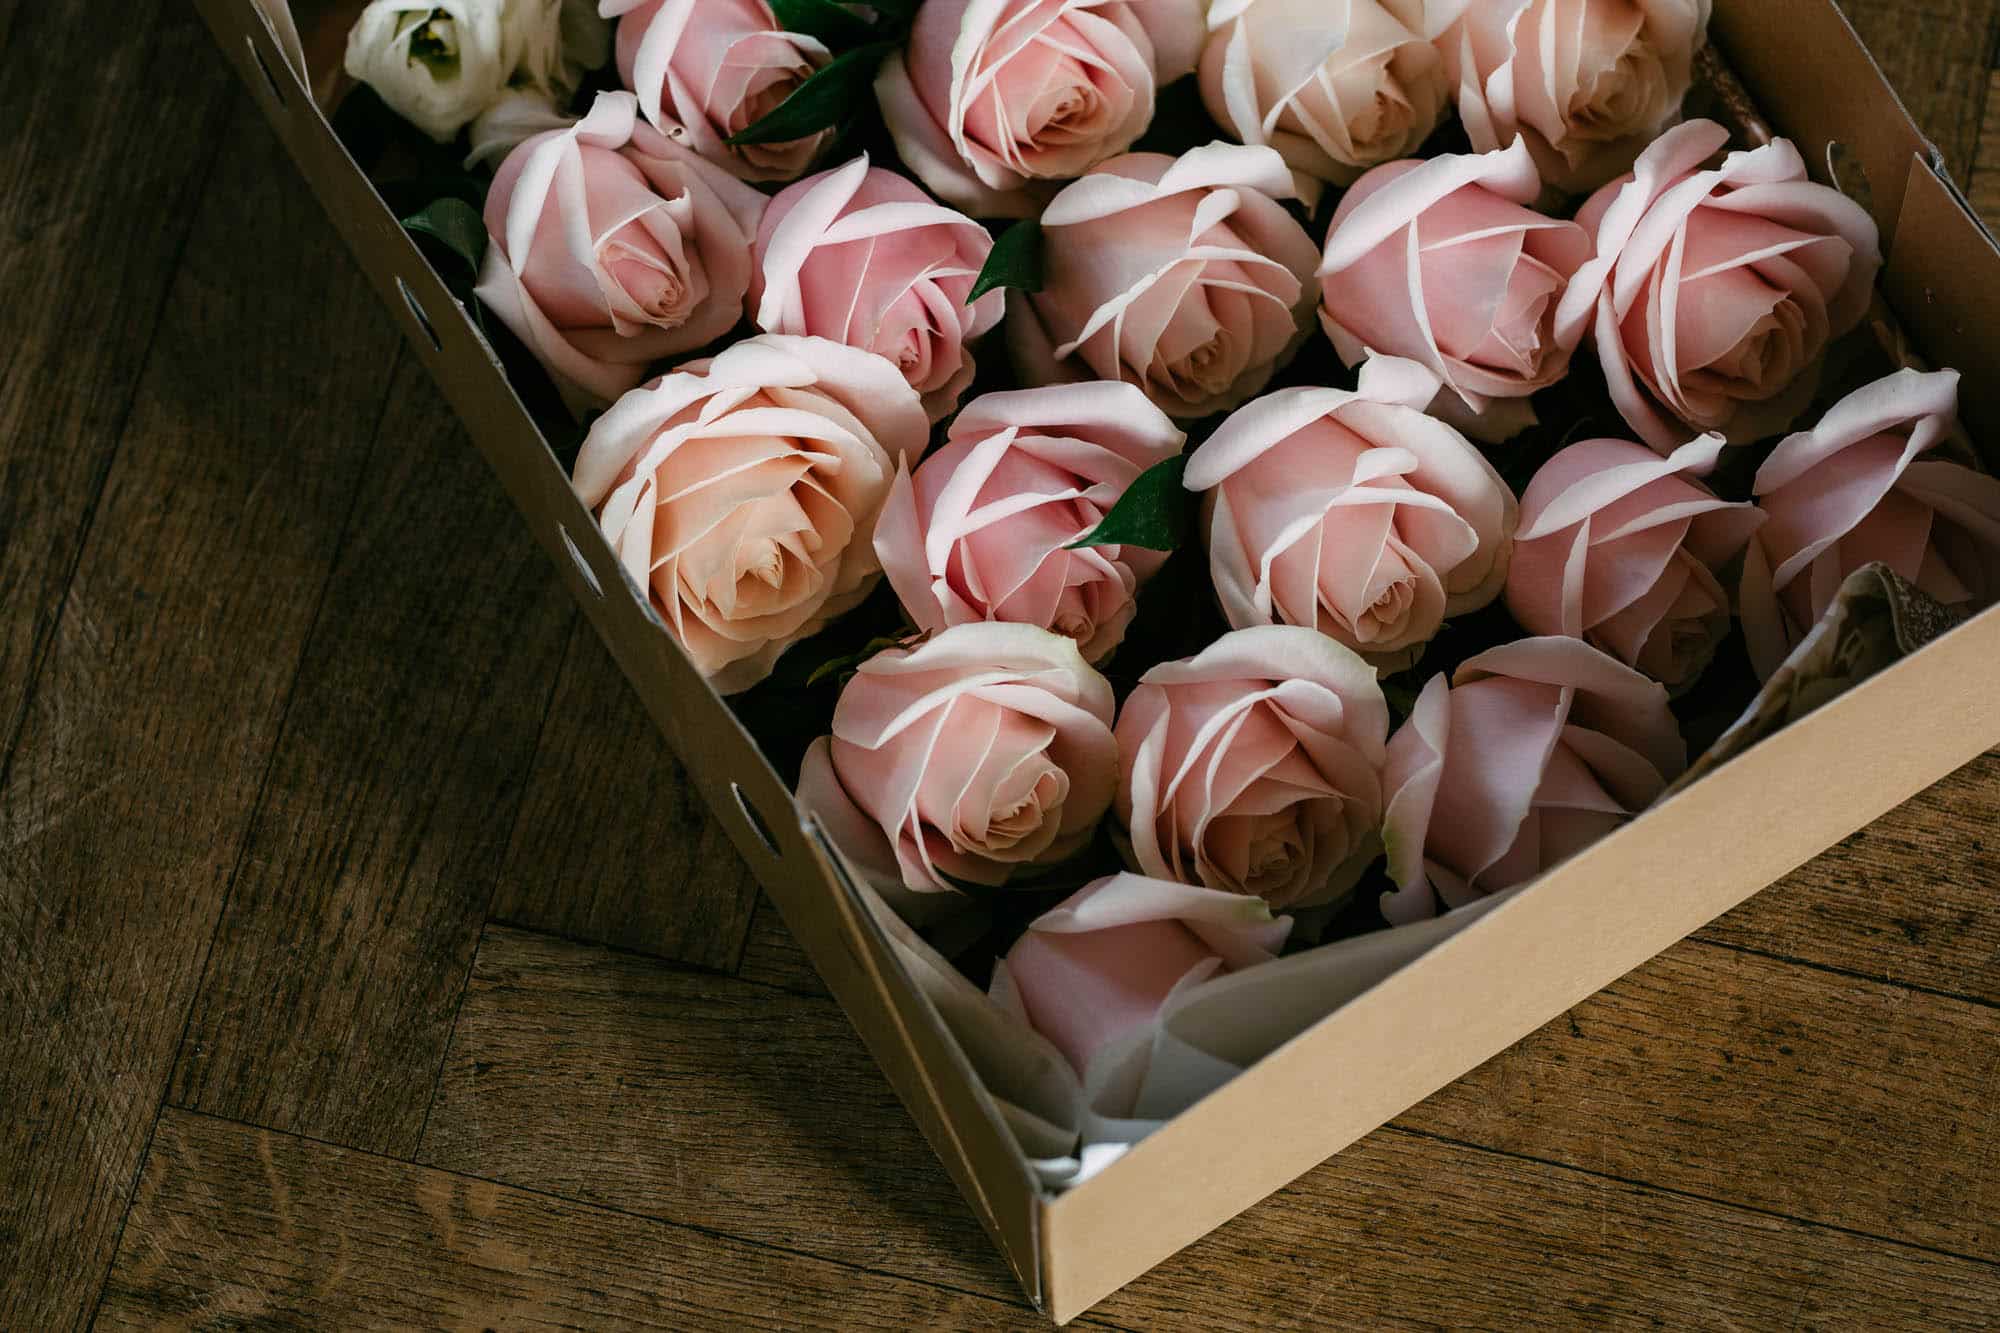 Roze en witte rozen in een doos op een houten vloer die de delicate schoonheid van bloemen laat zien.